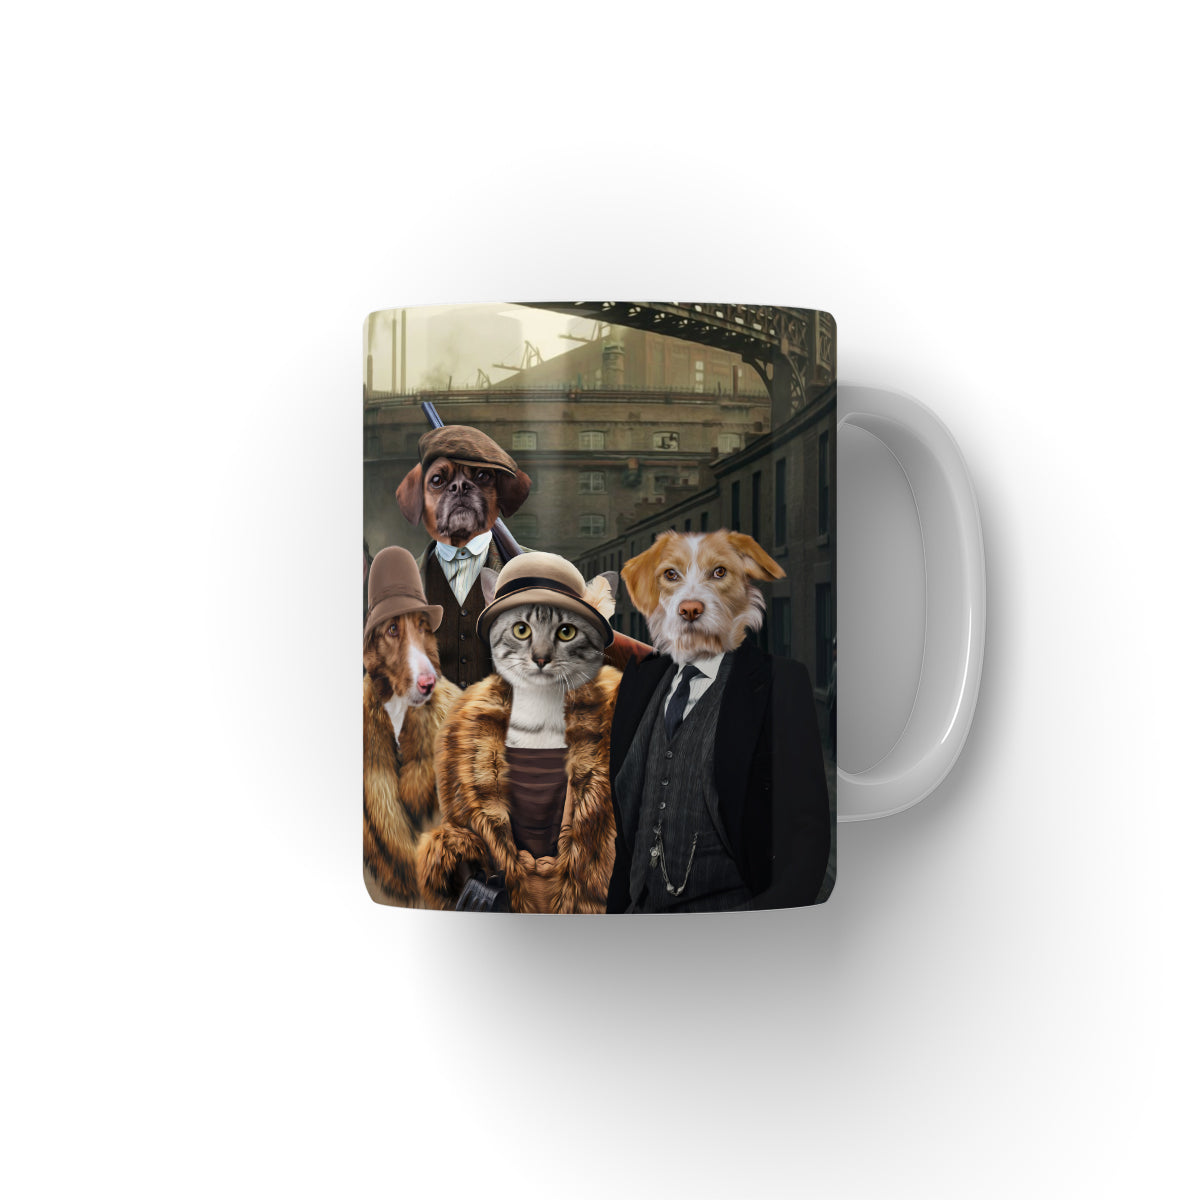 Paw & Glory, pawandglory, personalized puppy mug, custom dog mug, personalised mugs dog, mugs with dog and owner, custom cat mug, coffee mug with dogs, Pet Portrait Mug,